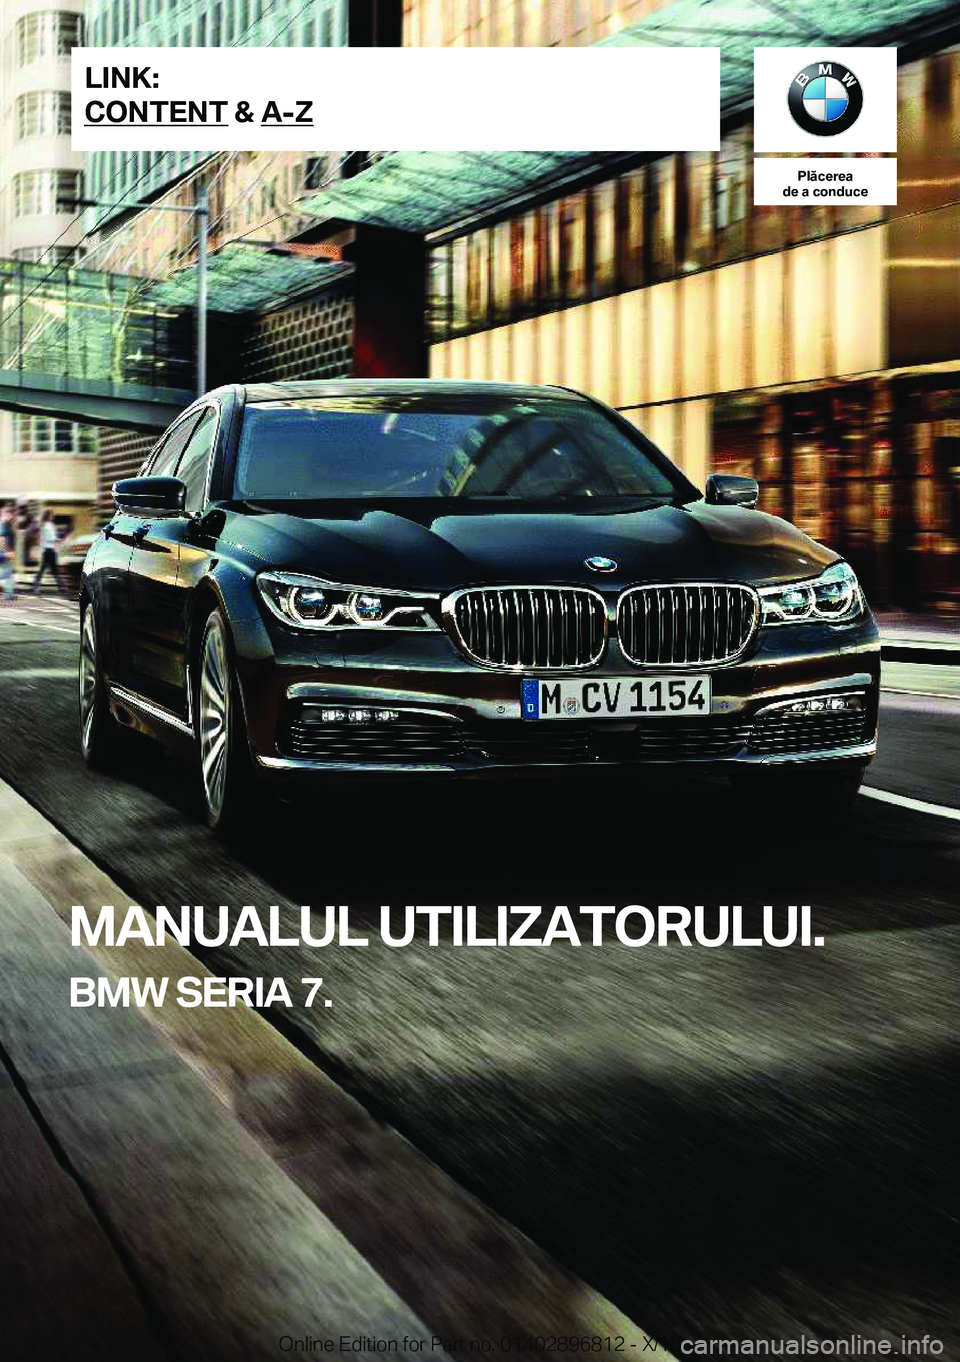 BMW 7 SERIES 2019  Ghiduri De Utilizare (in Romanian) �P�l�ă�c�e�r�e�a
�d�e��a��c�o�n�d�u�c�e
�M�A�N�U�A�L�U�L��U�T�I�L�I�Z�A�T�O�R�U�L�U�I�.
�B�M�W��S�E�R�I�A��7�.�L�I�N�K�:
�C�O�N�T�E�N�T��&��A�-�Z�O�n�l�i�n�e��E�d�i�t�i�o�n��f�o�r��P�a�r�t�